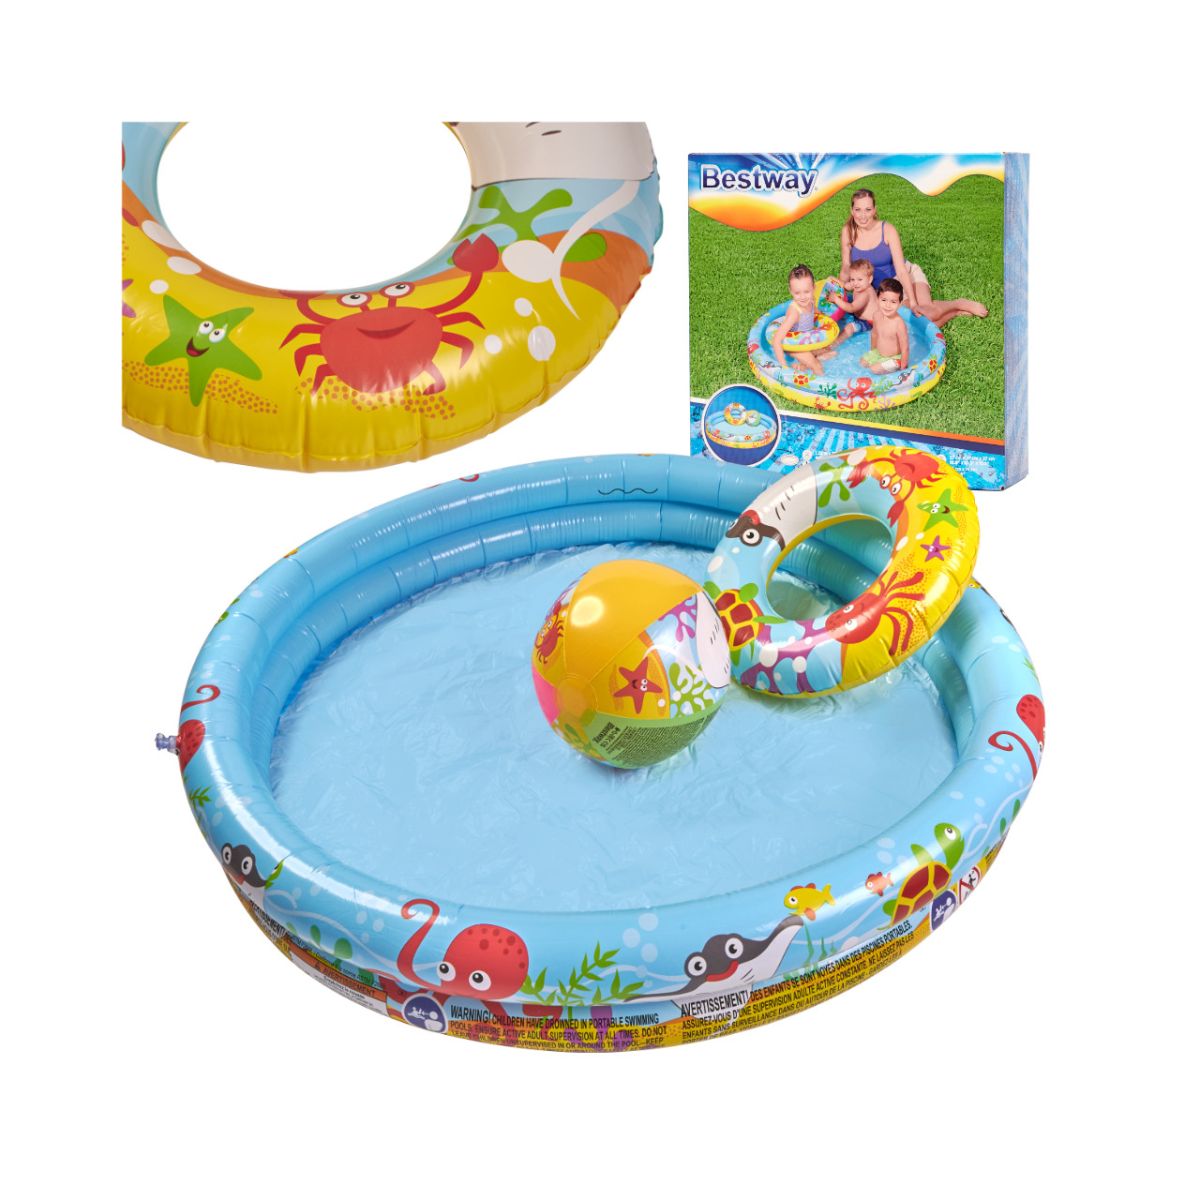 Jucarii exterior - Piscina pentru copii cu minge de plajă si colac, hectarul.ro